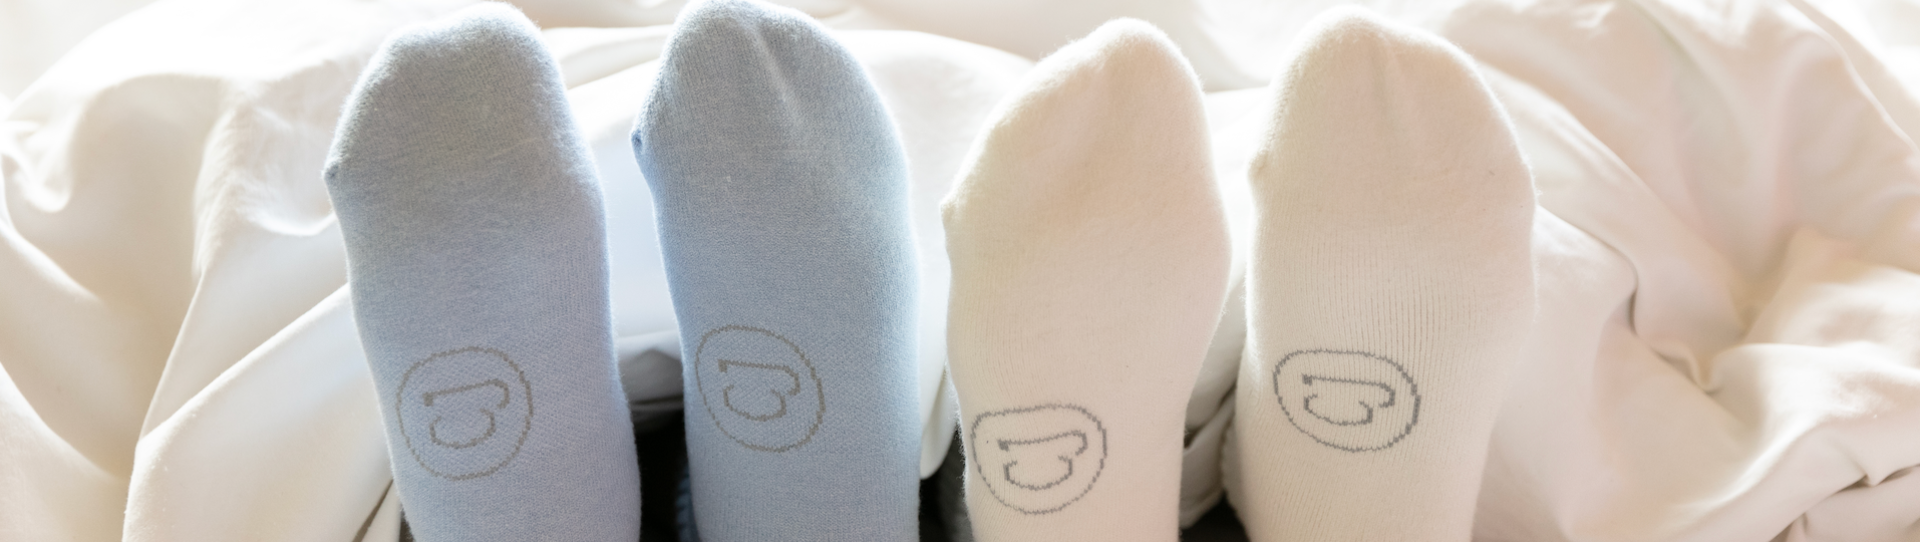 Die Vorteile des Tragens von Socken im Bett